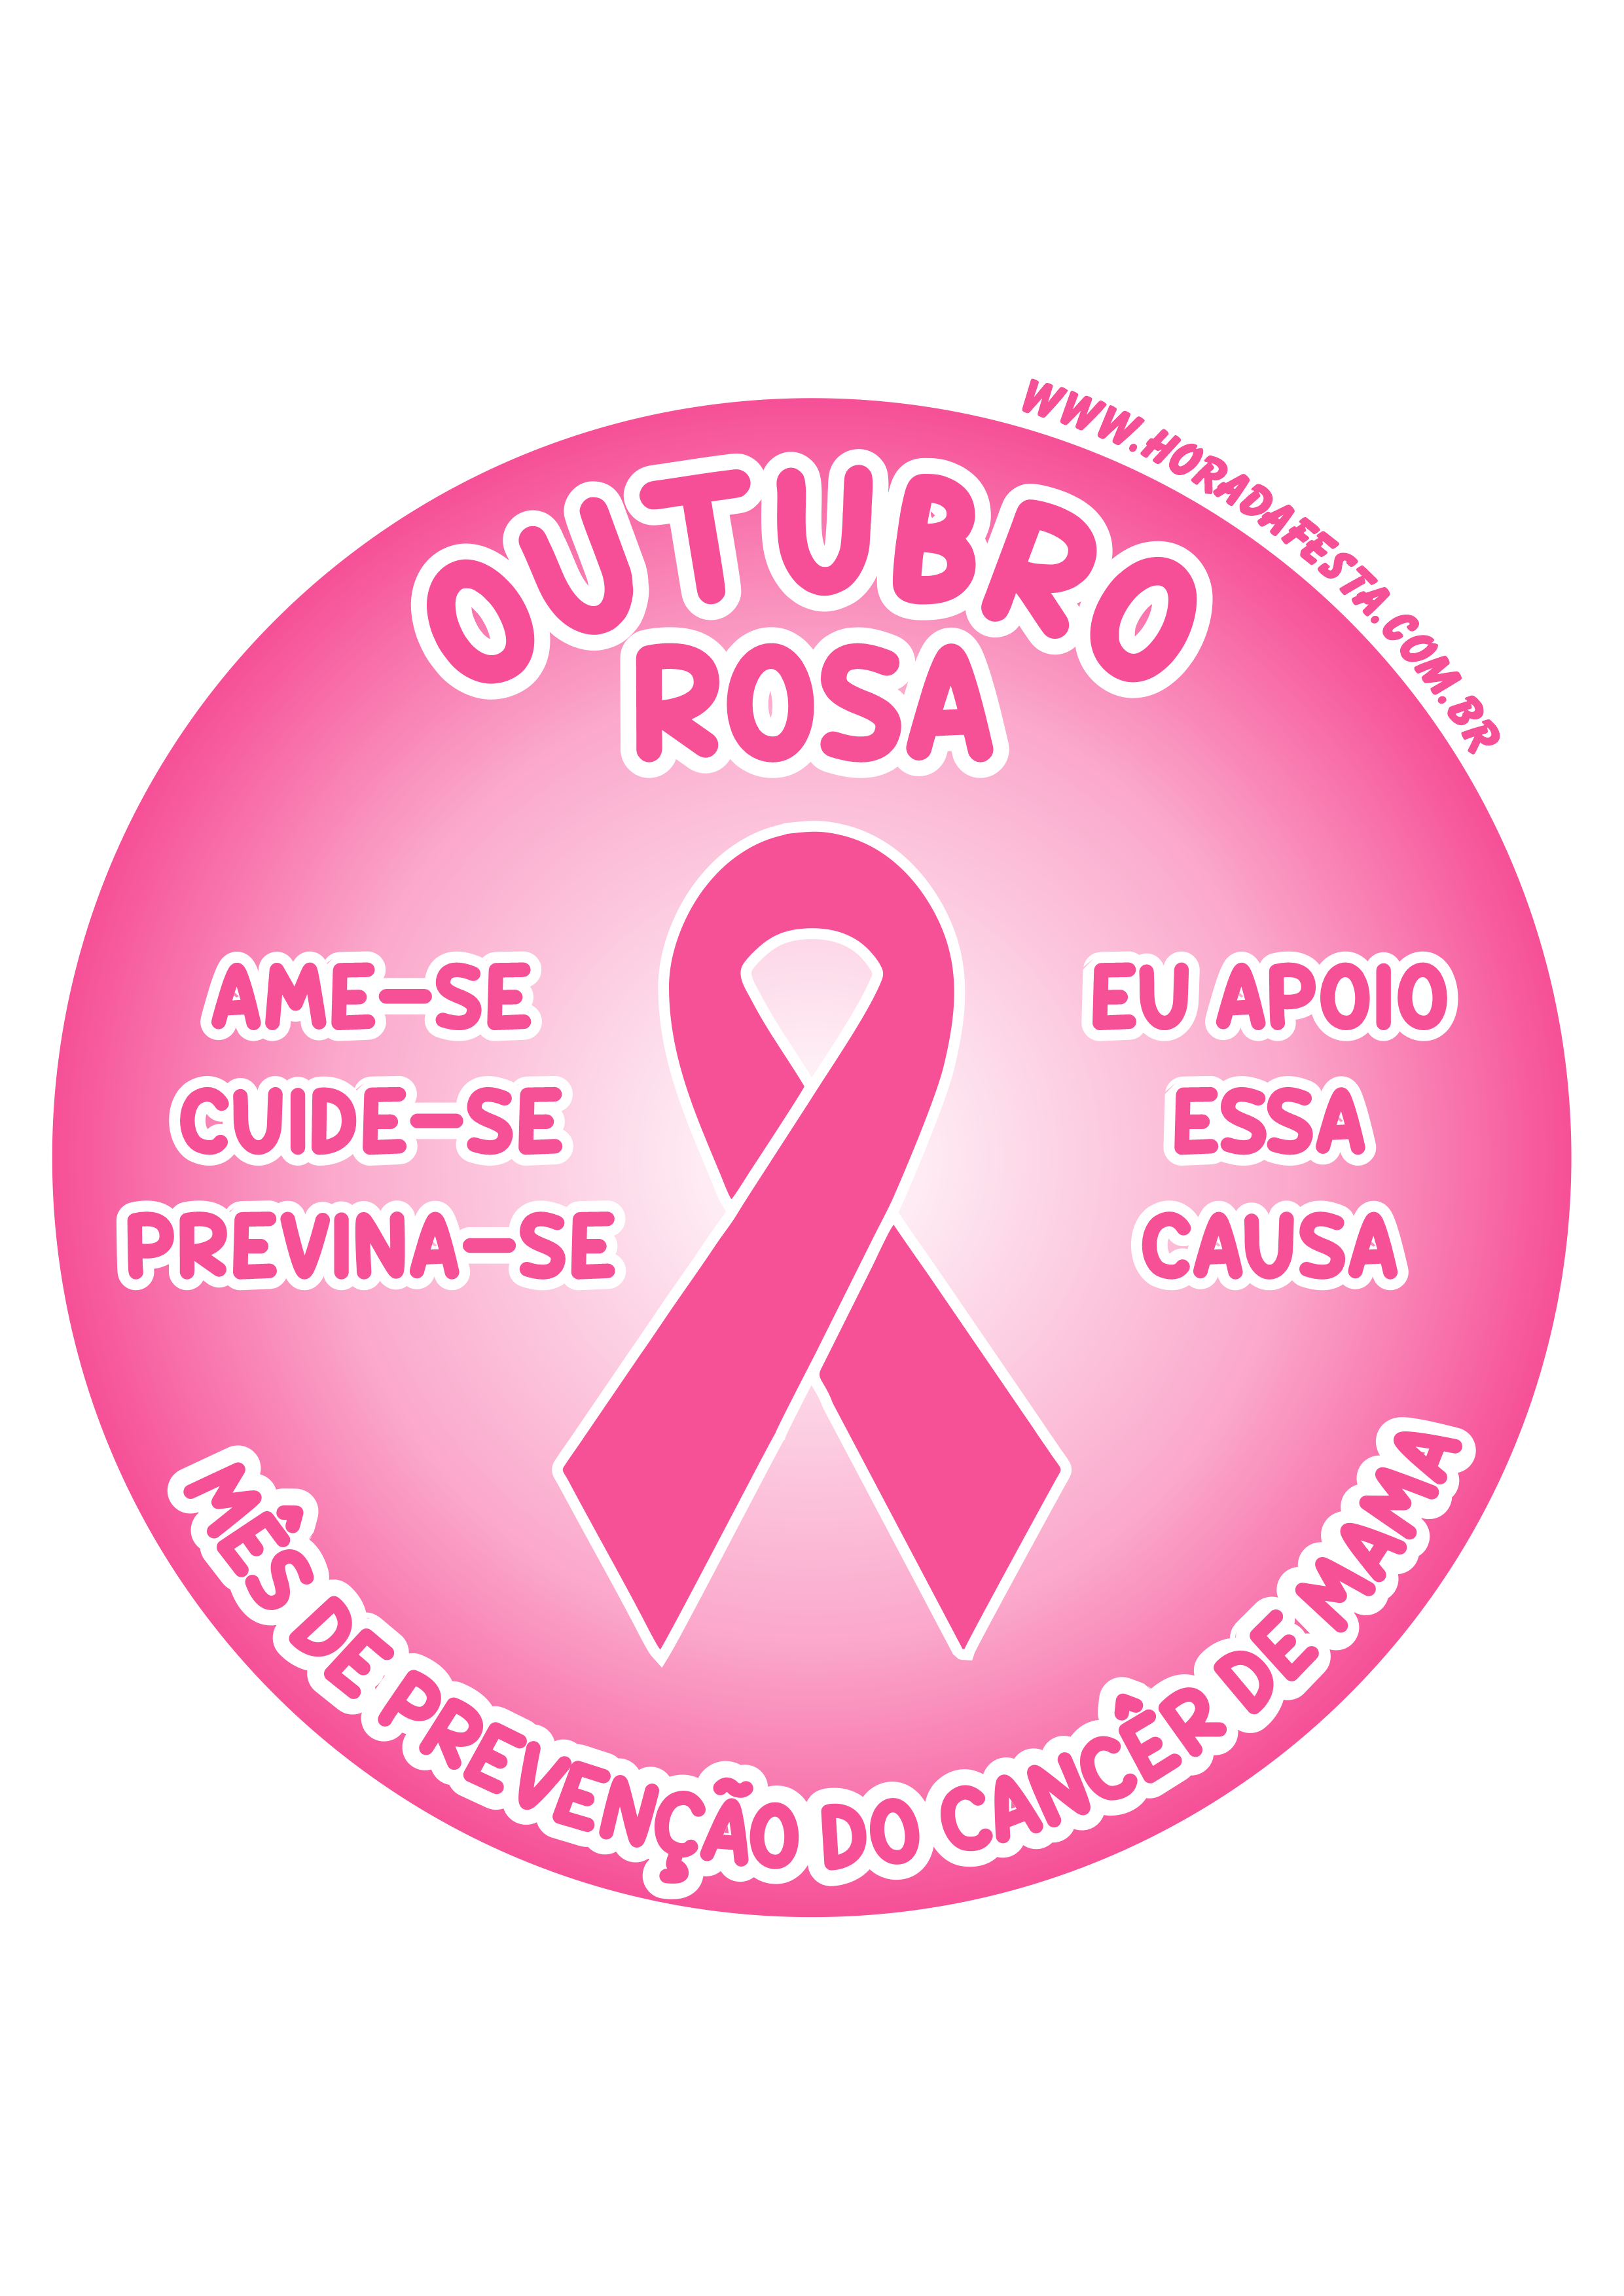 Outubro rosa mês de prevenção do câncer de mama ame-se cuide-se previna-se eu apoio essa causa adesivo redondo tag sticker png